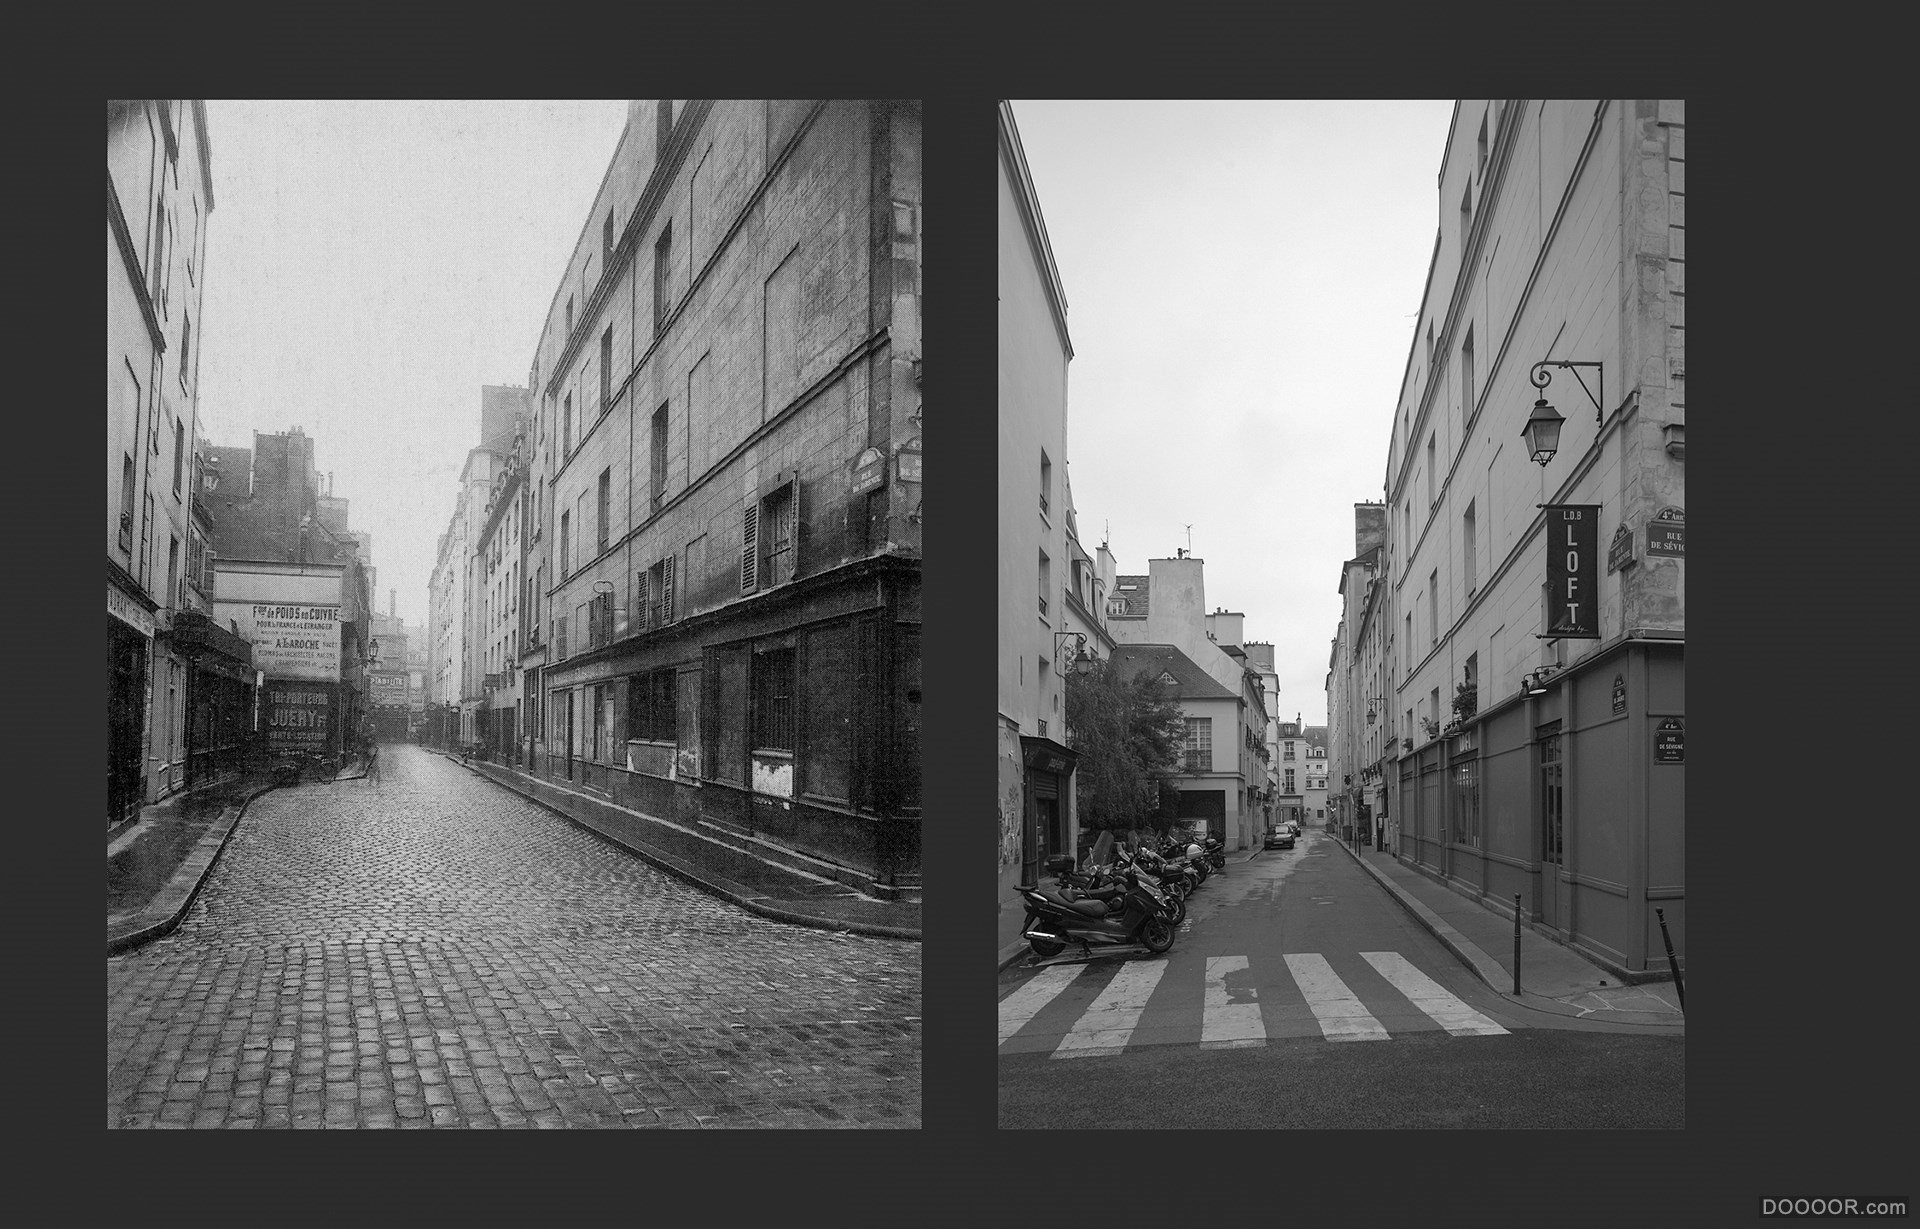 过去与现在-巴黎街头照片对比 [50P] (27).jpg